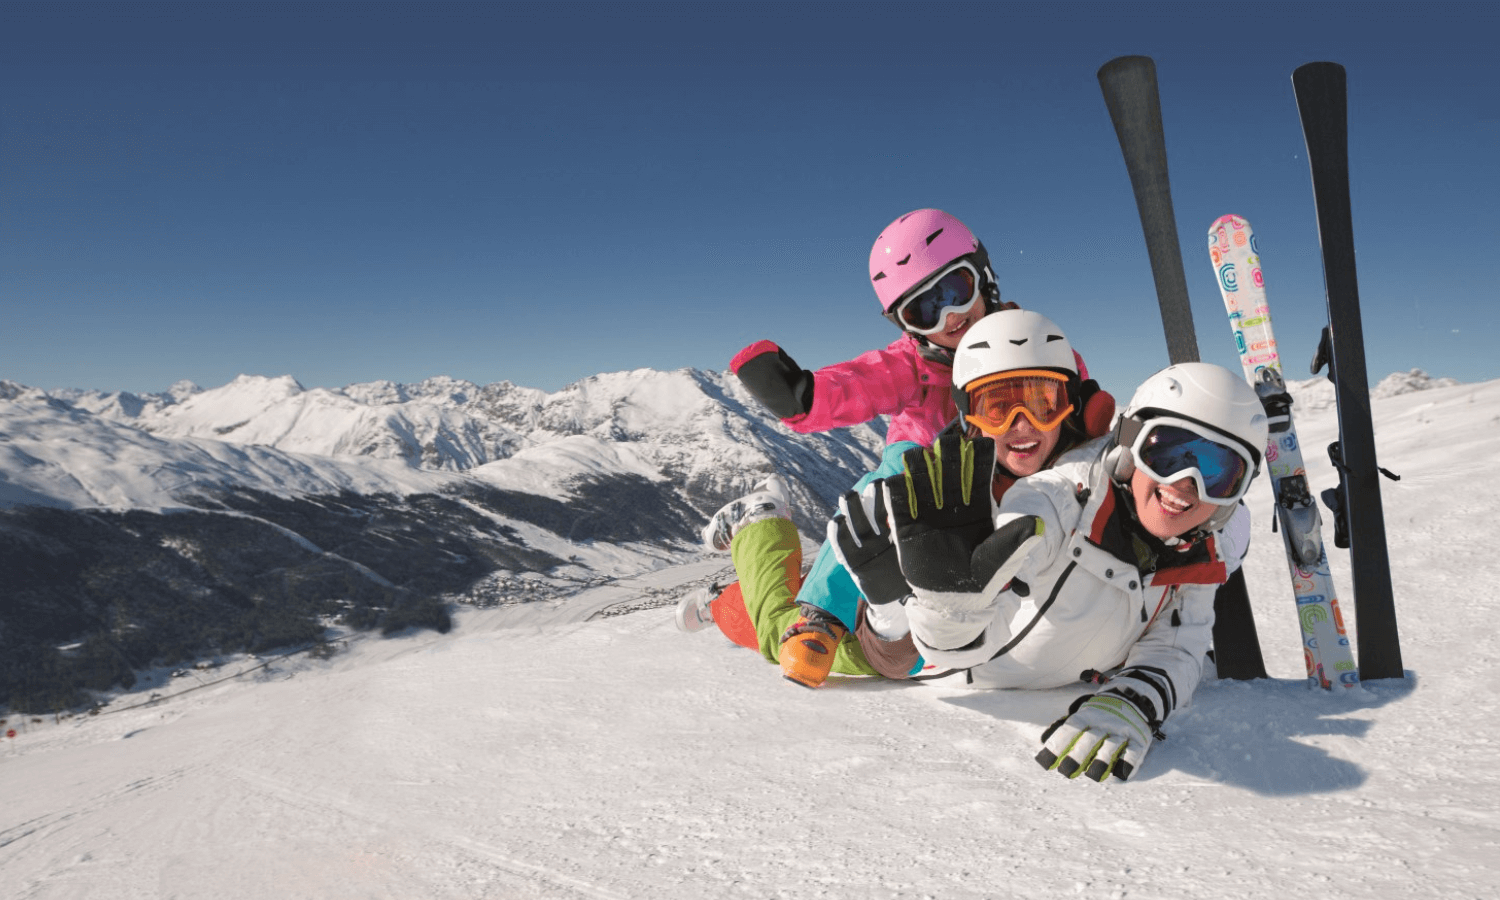 Skifahren können Kinder in fast allen Skigebieten lernen. Auf dem Bild sieht man drei Kinder mit Skiausrüstung, die auf dem Bauch im Schnee liegen und für das Foto posieren. © iStock